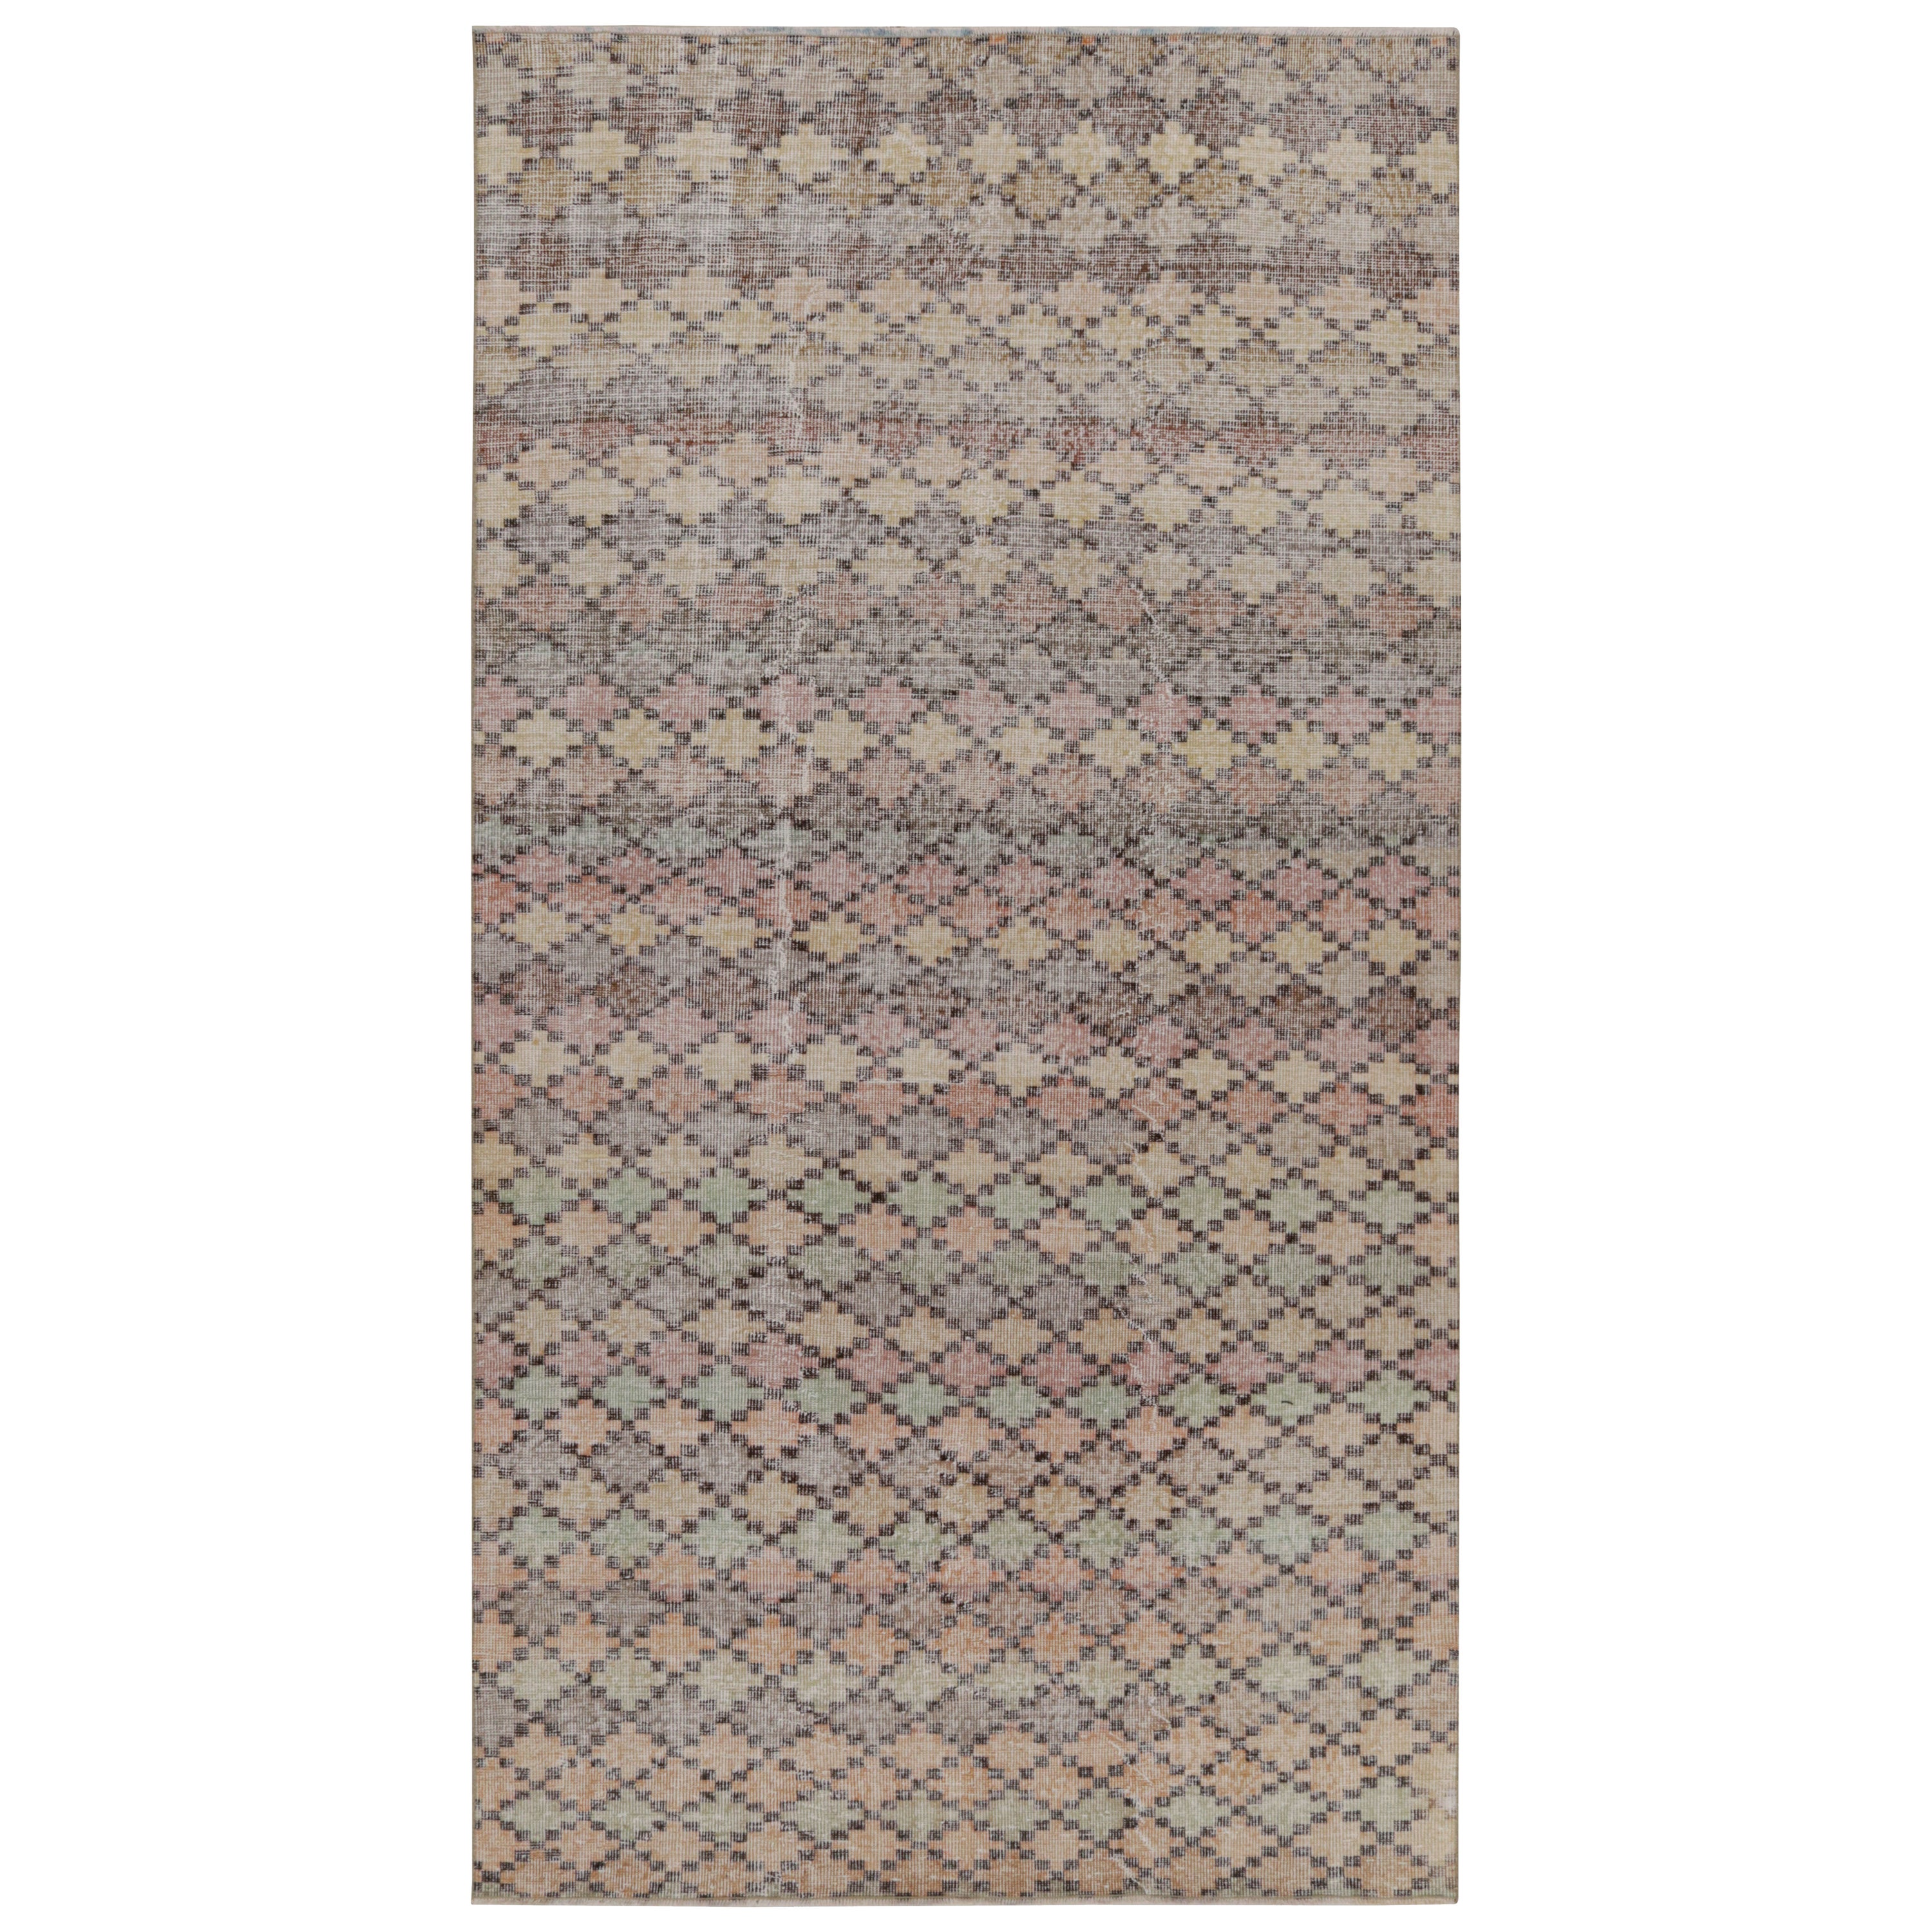 Vintage Zeki Müren Teppich mit polychromen geometrischen Mustern, von Rug & Kilim